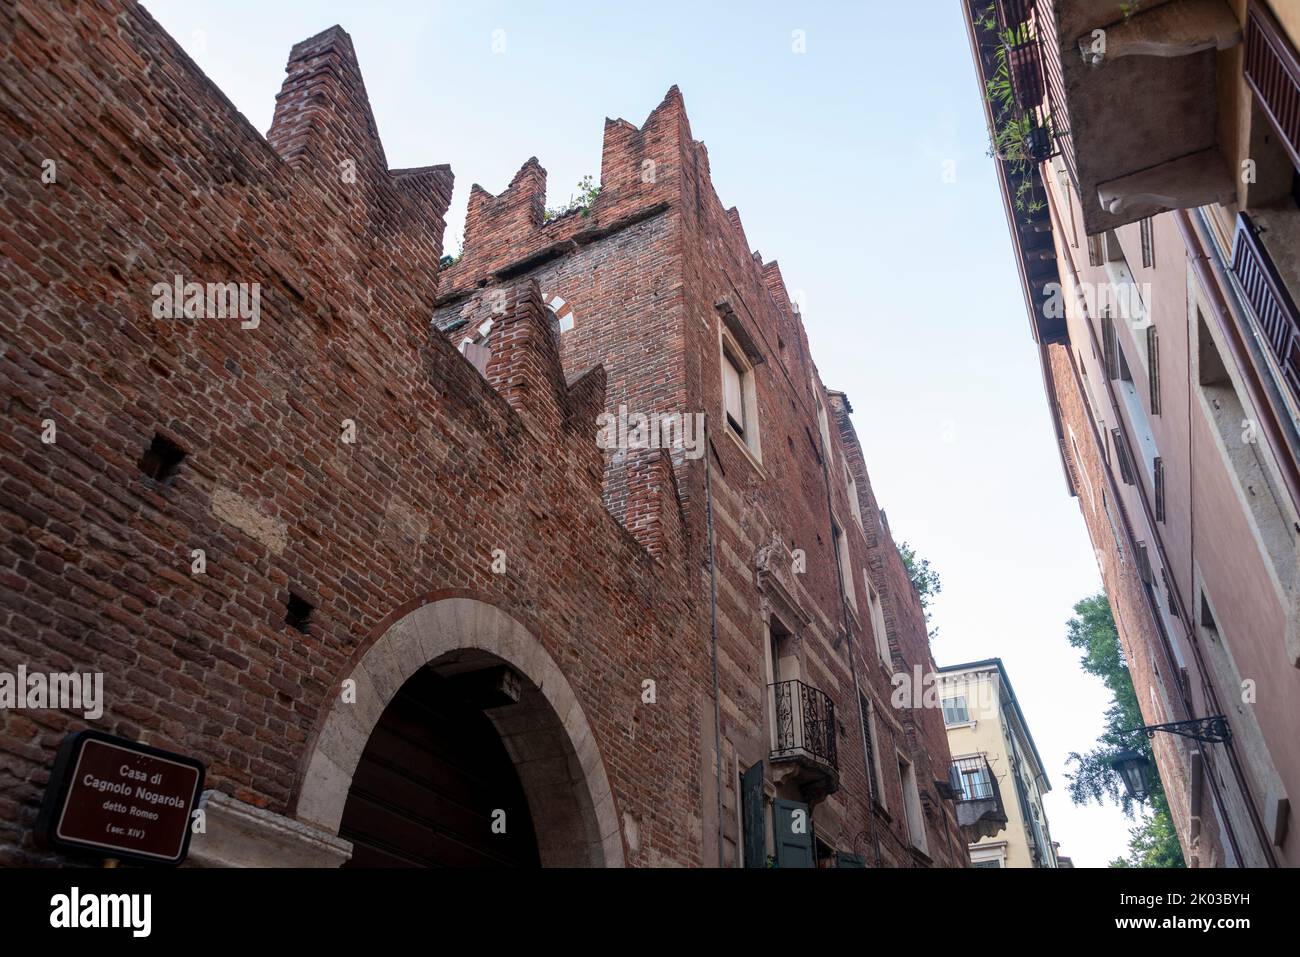 Casa di Cagnolo Nogarola, Haus von Romeo, Verona, Venetien, Italien Stockfoto